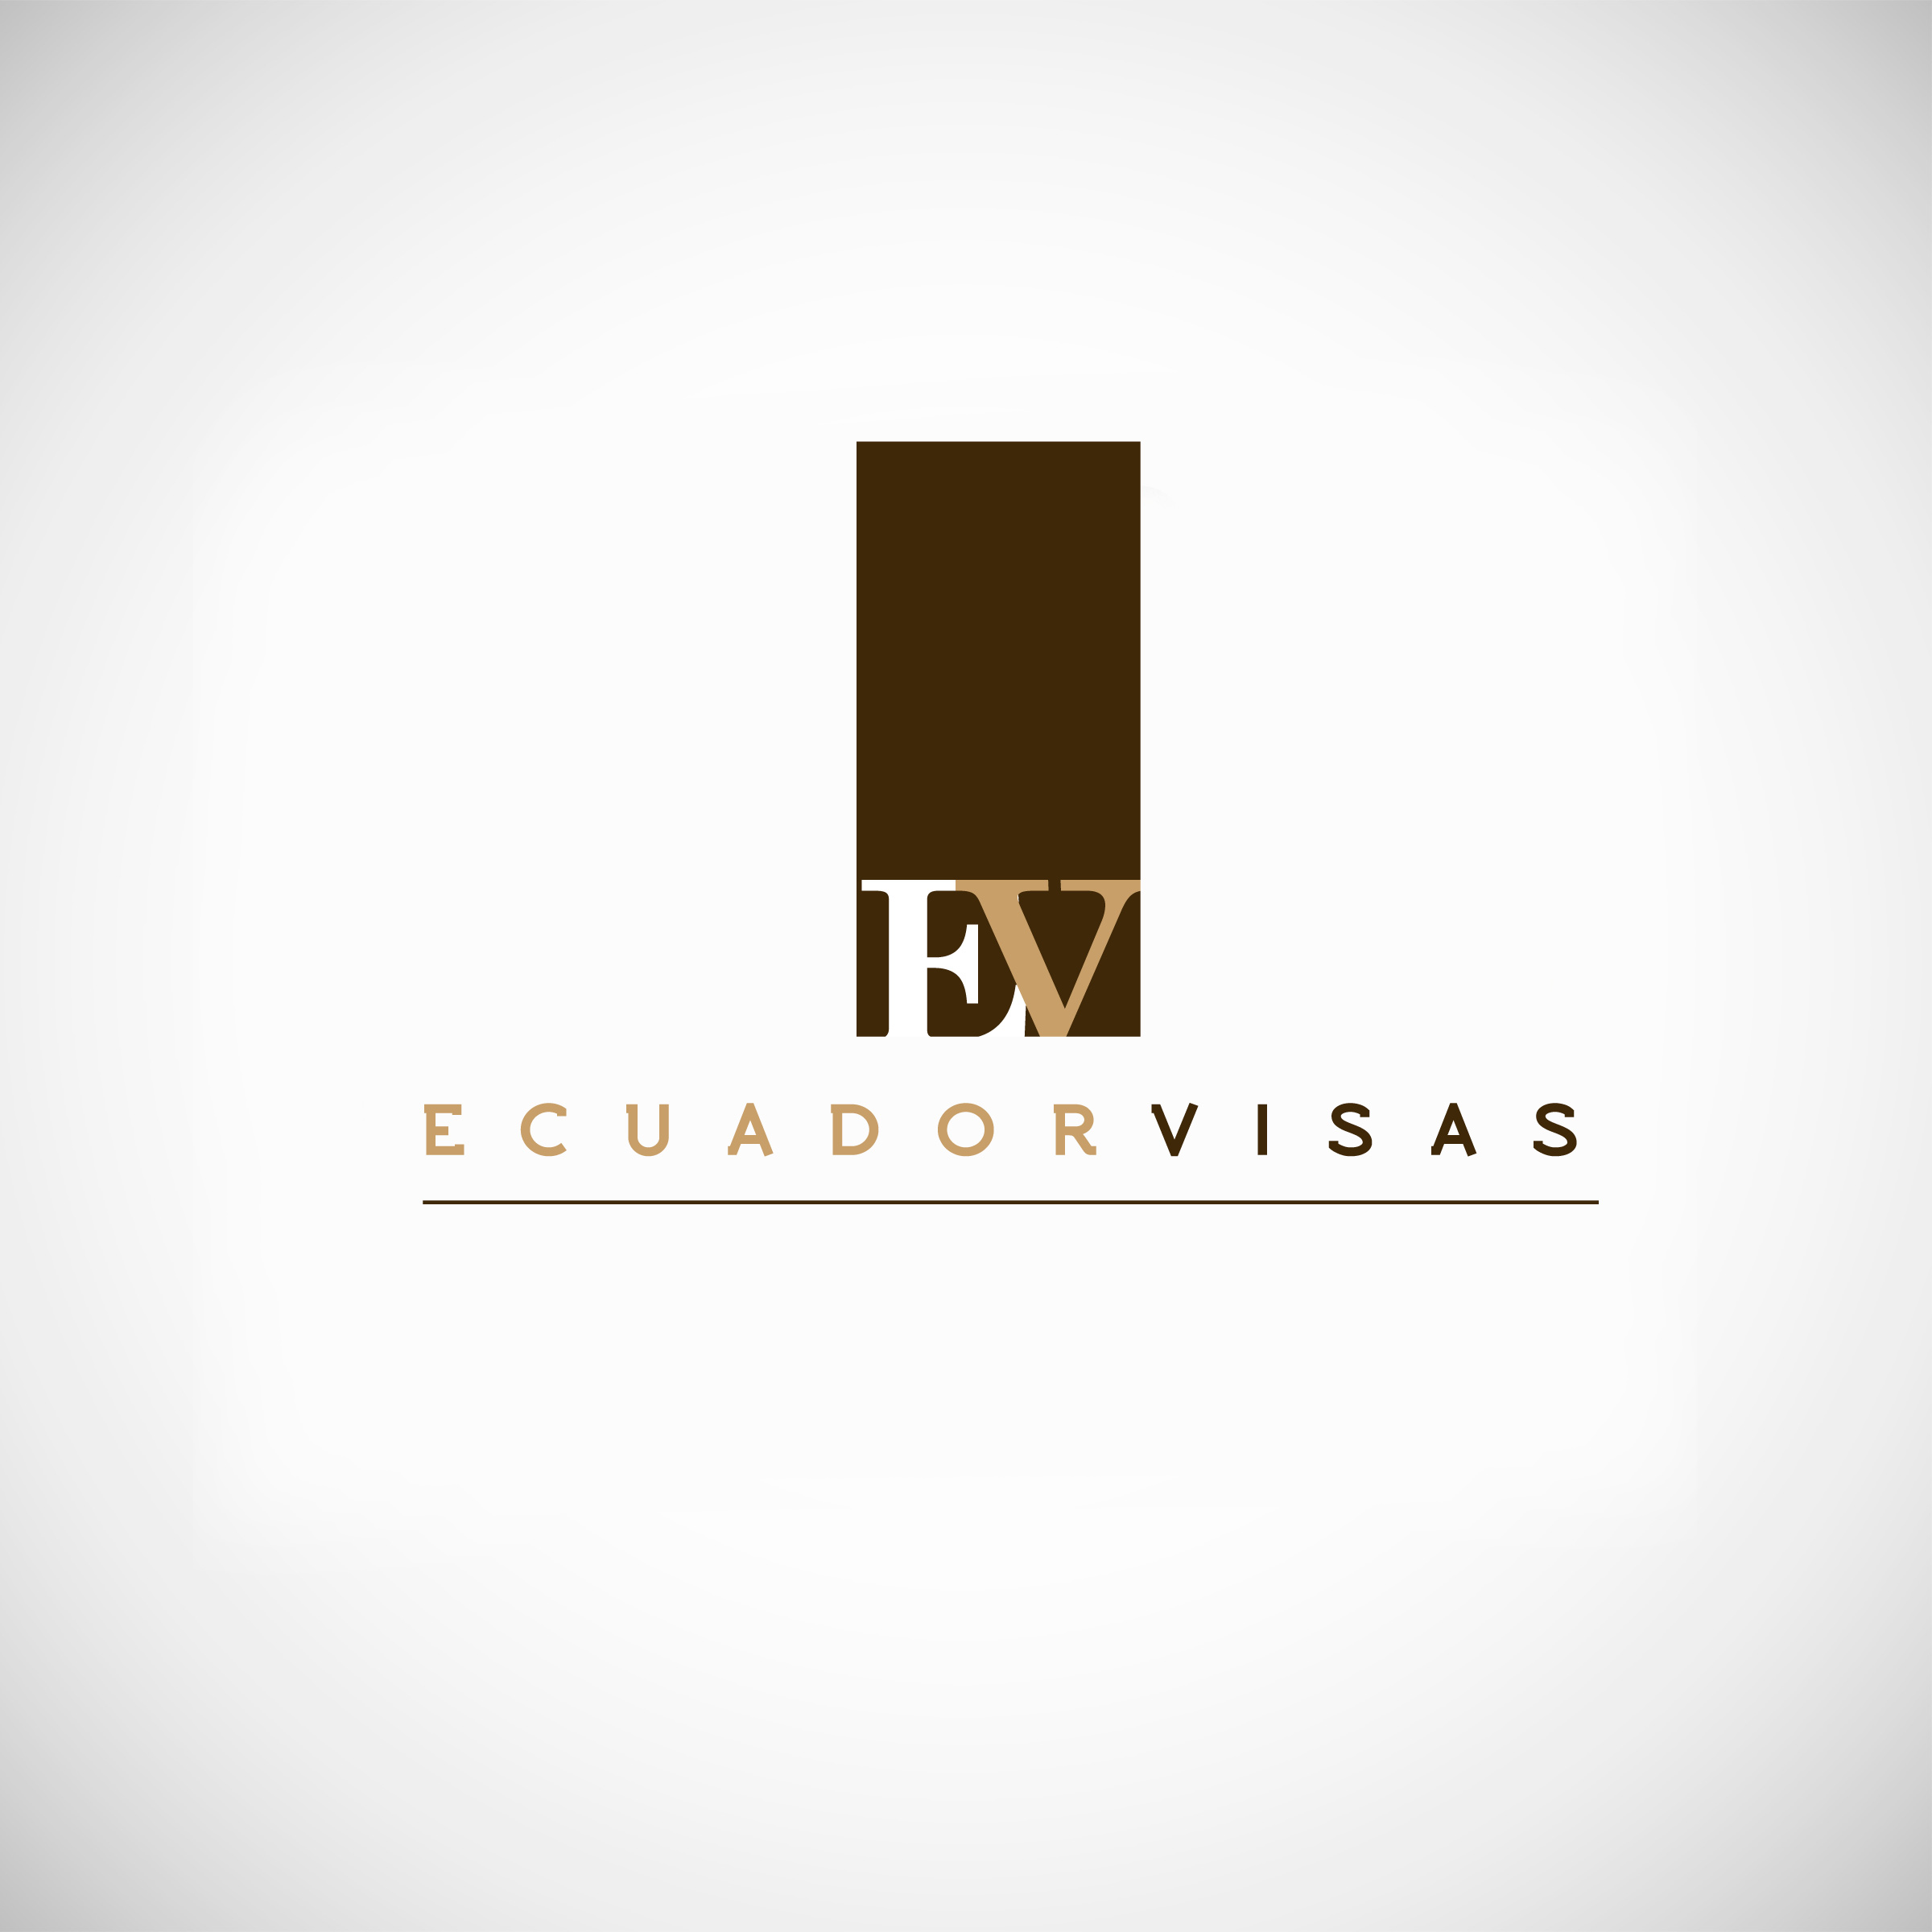 "Ecuador Visas" - Law Office of World Renowned Ecuadorian "Attorney/Lawyer Sara Chaca" 